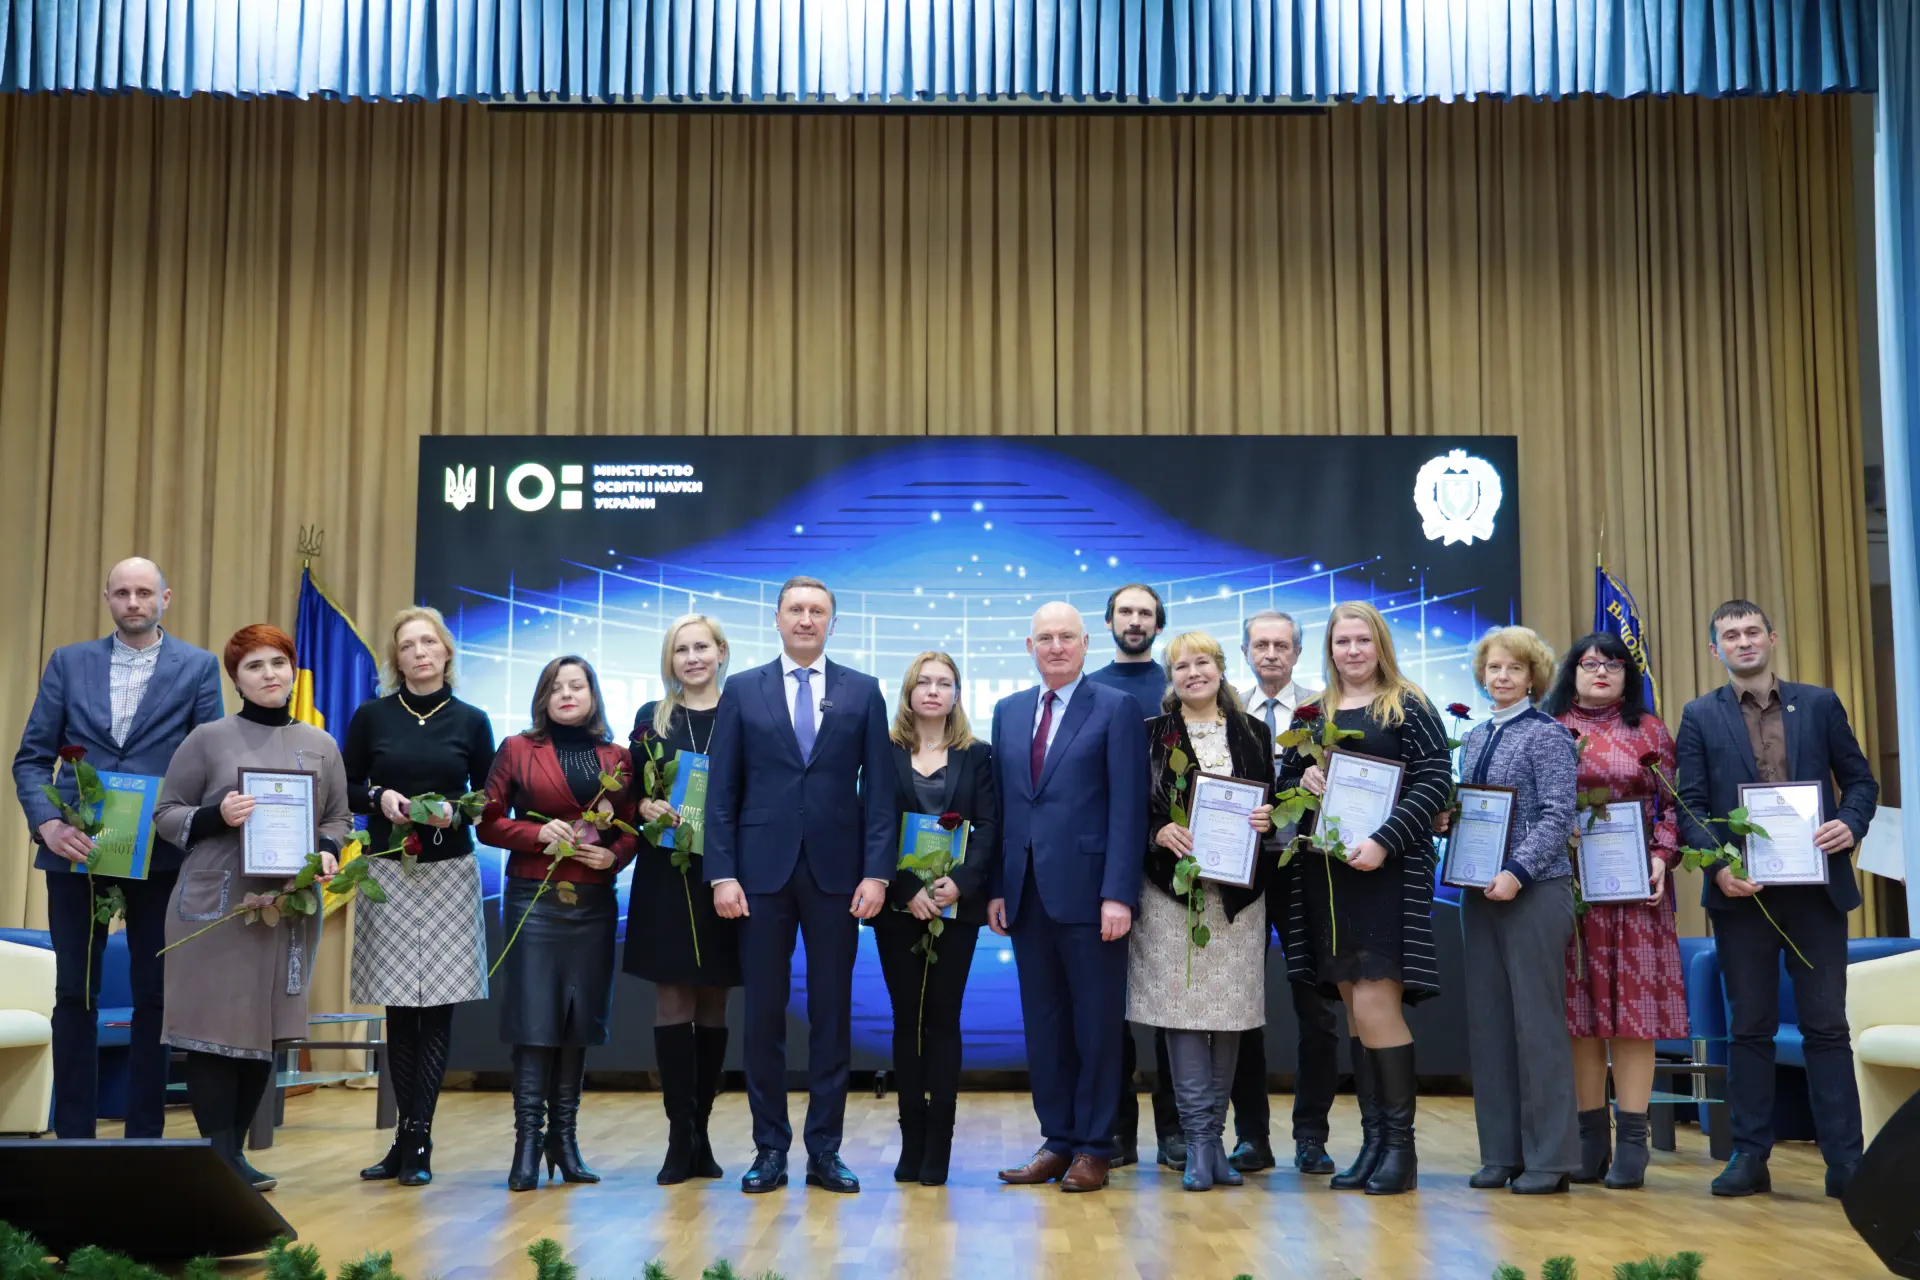 23 науковці і співробітники Полтавської політехніки нагороджені за досягнення